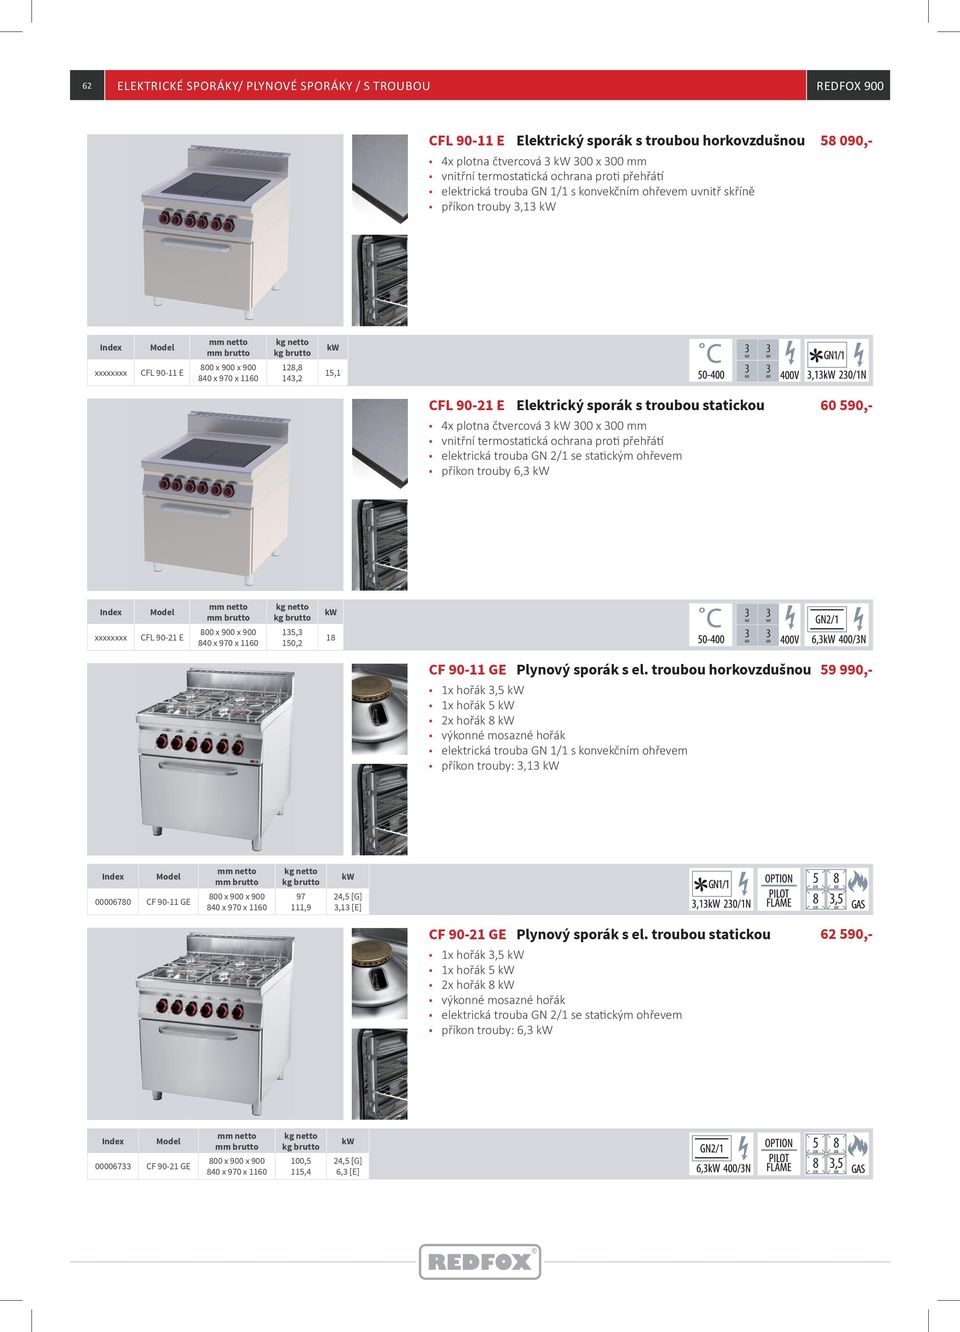 00 mm vnitřní termostatická ochrana proti přehřátí elektrická trouba GN 2/1 se statickým ohřevem př í kon trouby 6, 60 590,- xxxxxxxx CFL 90-21 E 15, 150,2 18 CF 90-11 GE Plynový sporák s el.